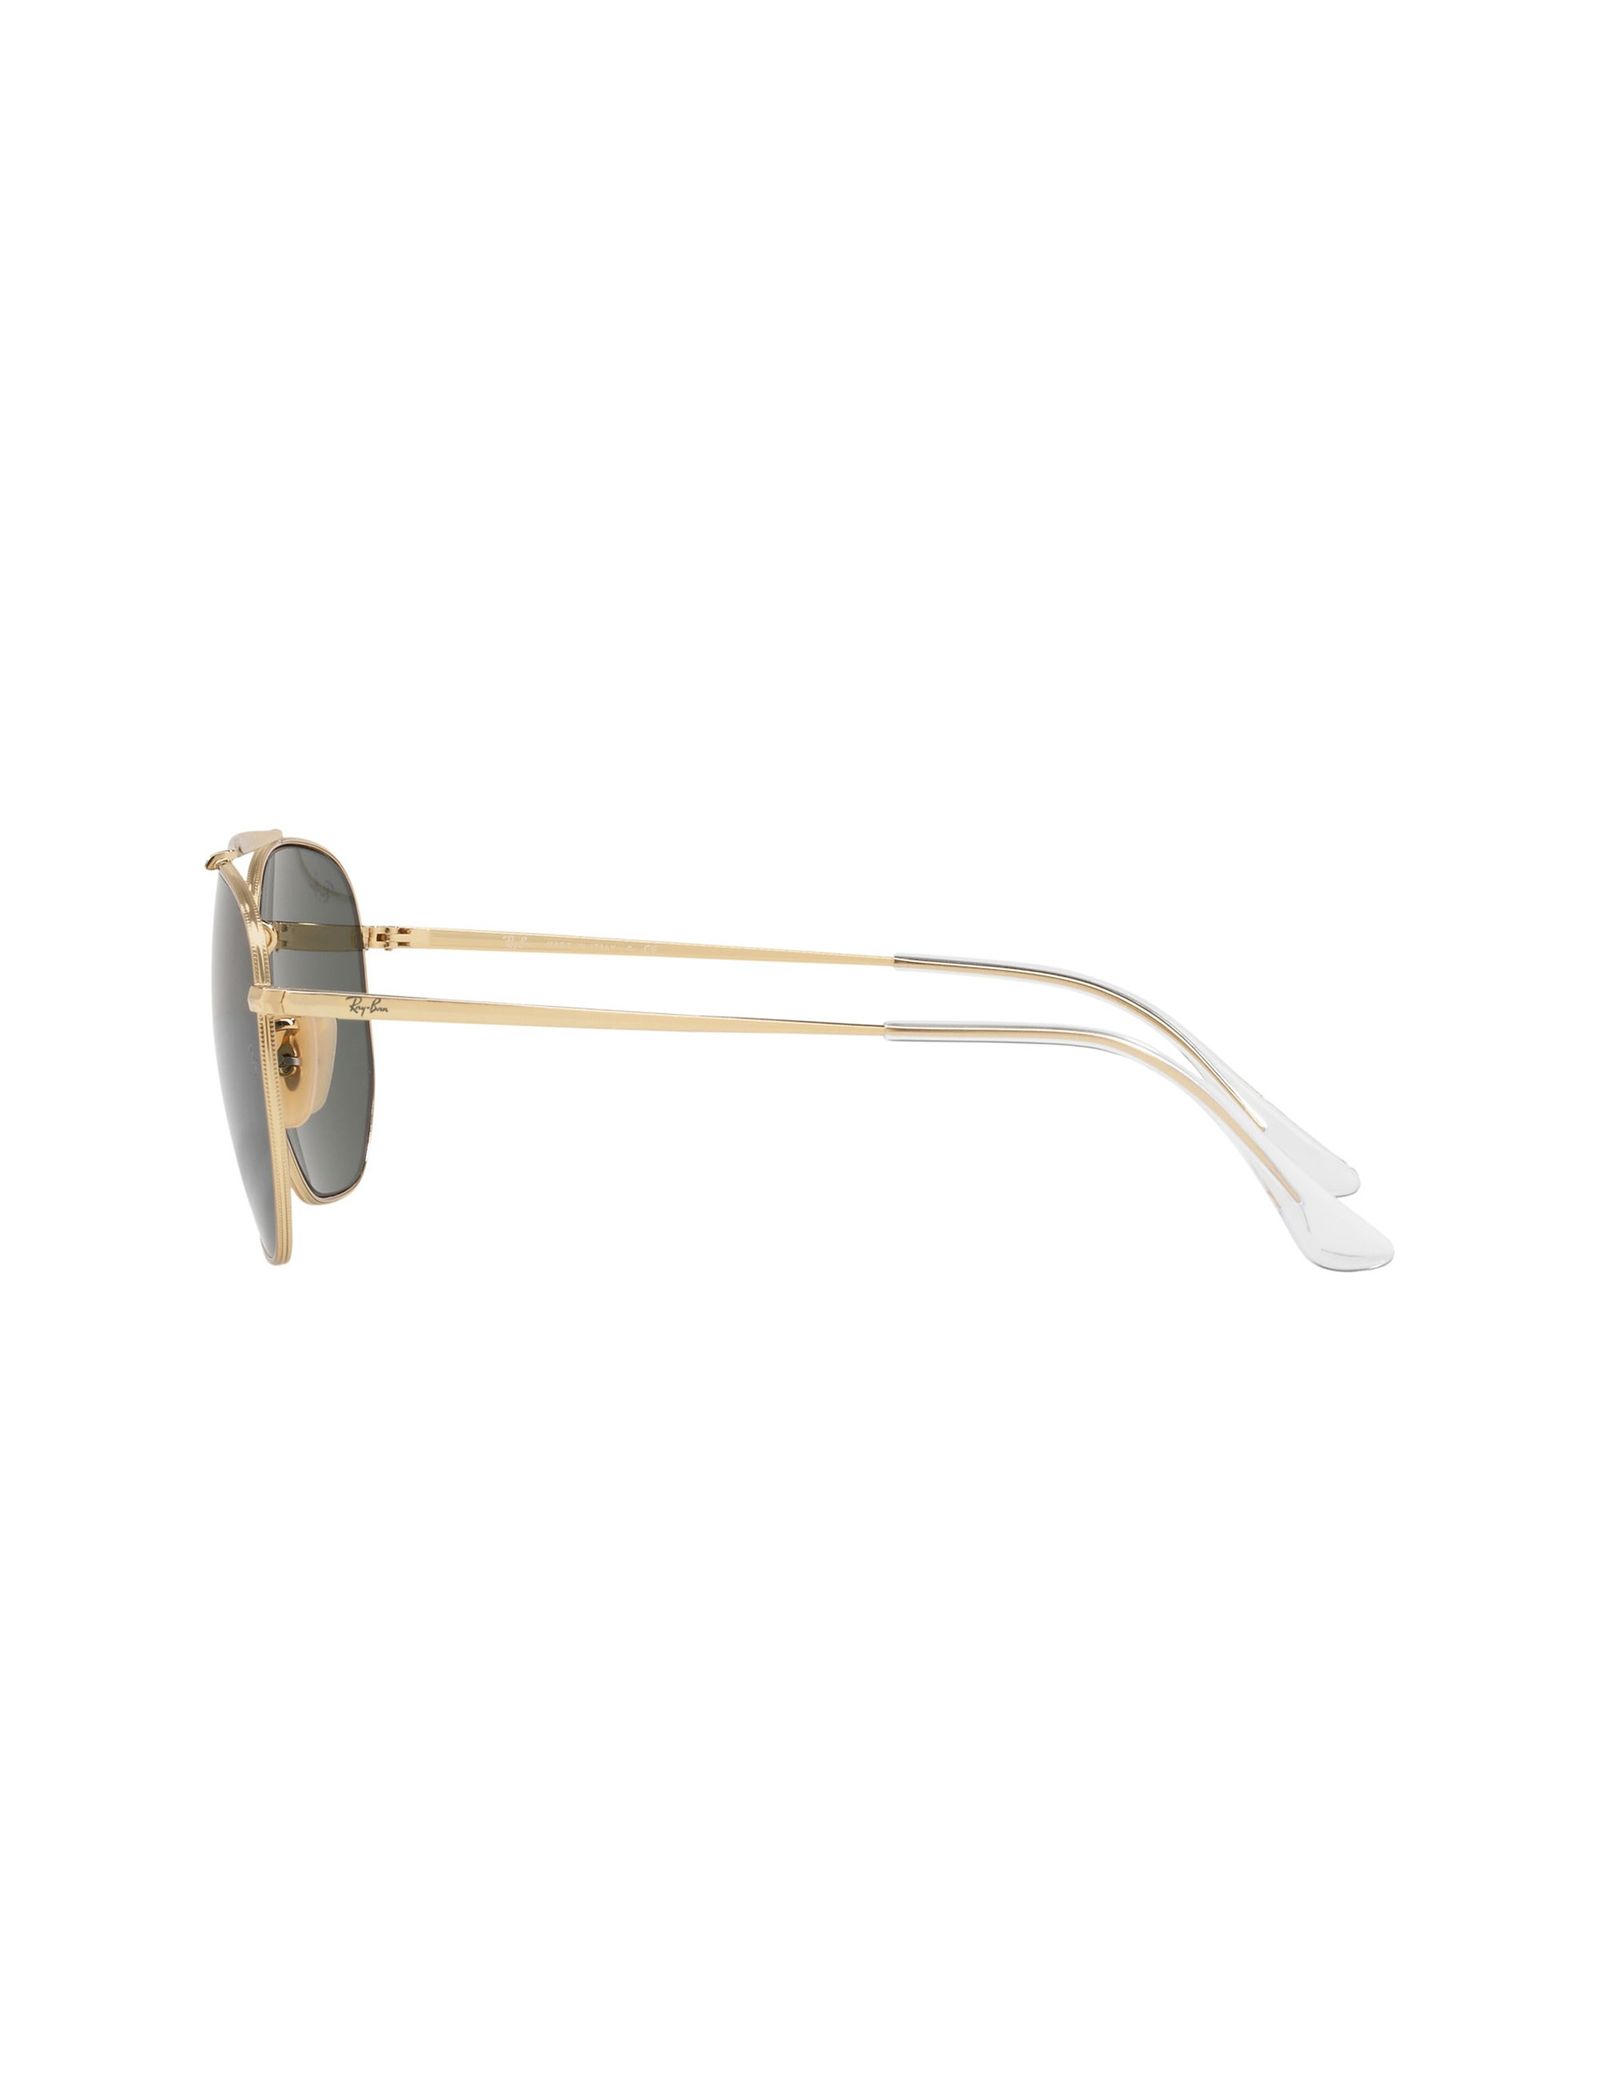 عینک آفتابی خلبانی مردانه - ری بن تک سایز - طلايي - 4